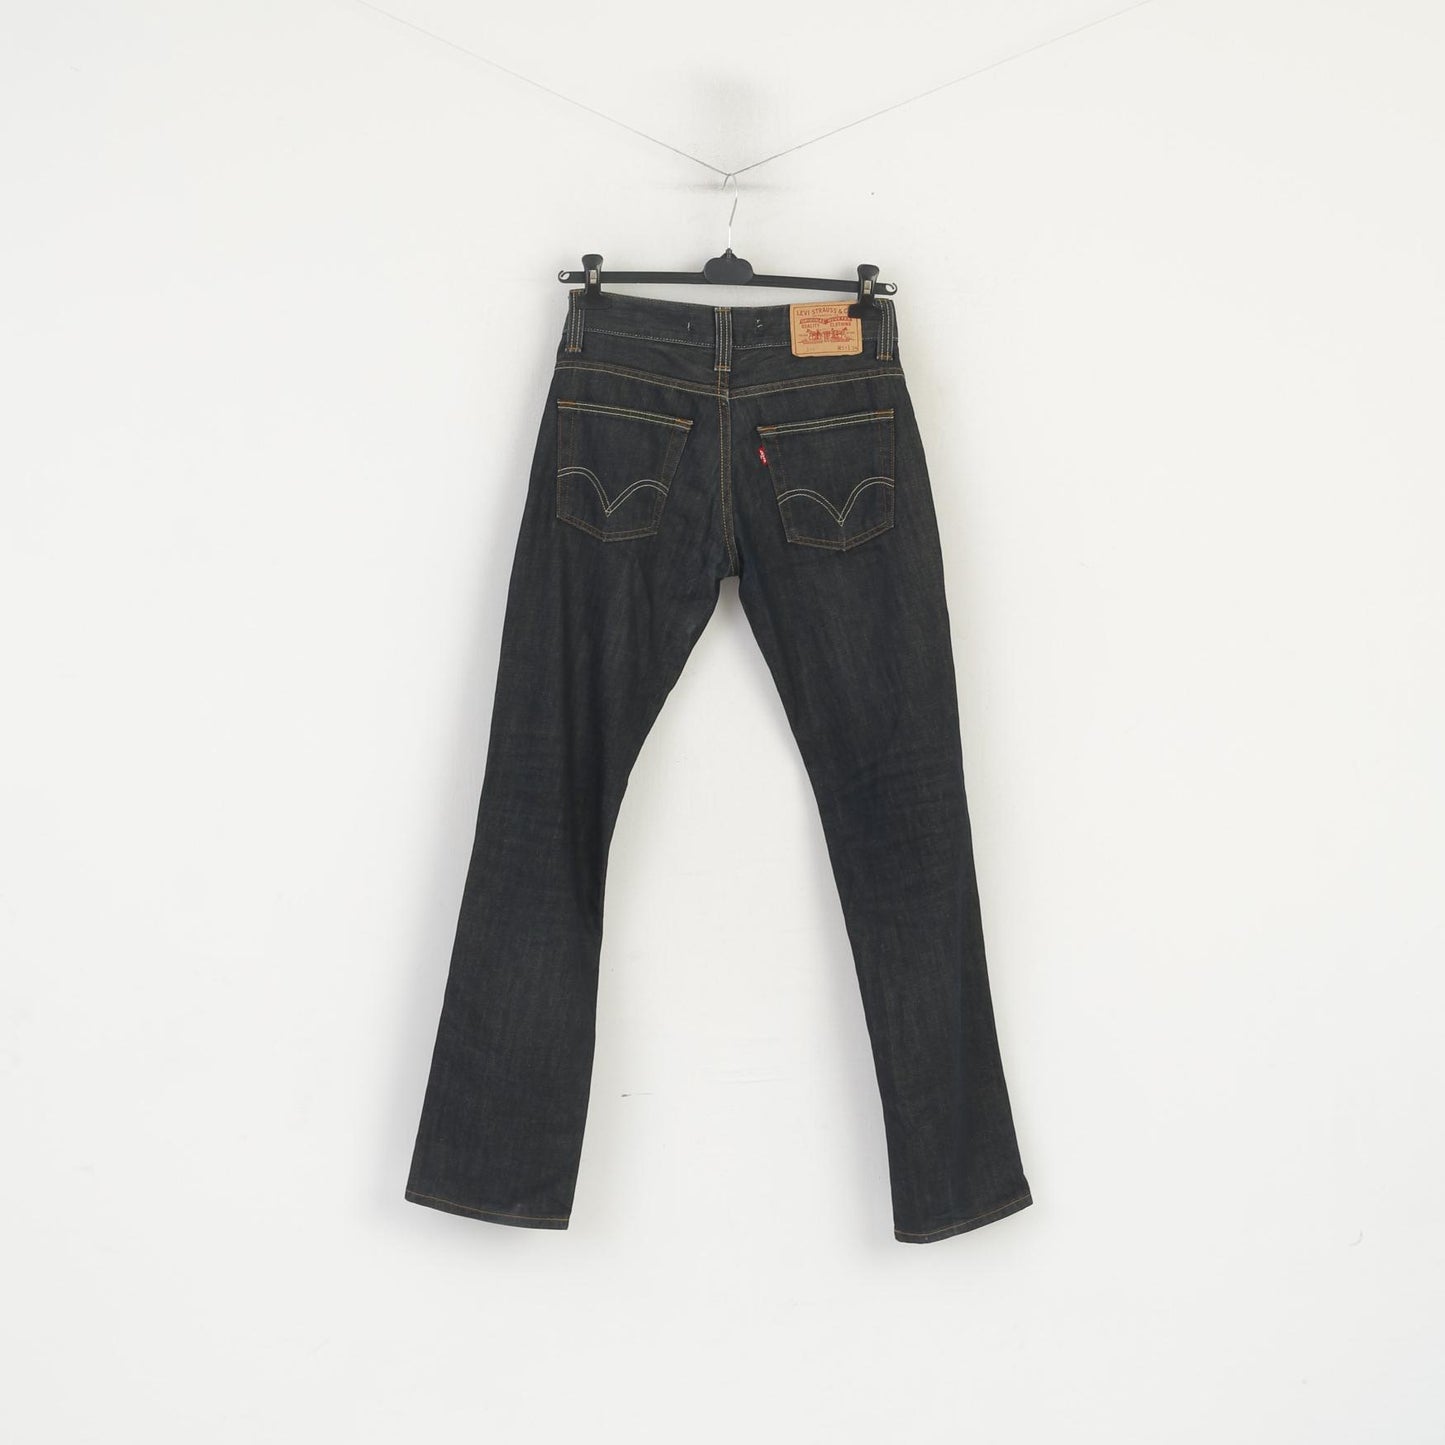 Levi's 511 Men 31 Jeans Trousers Navy Cotton Slim Denim Classic Pants